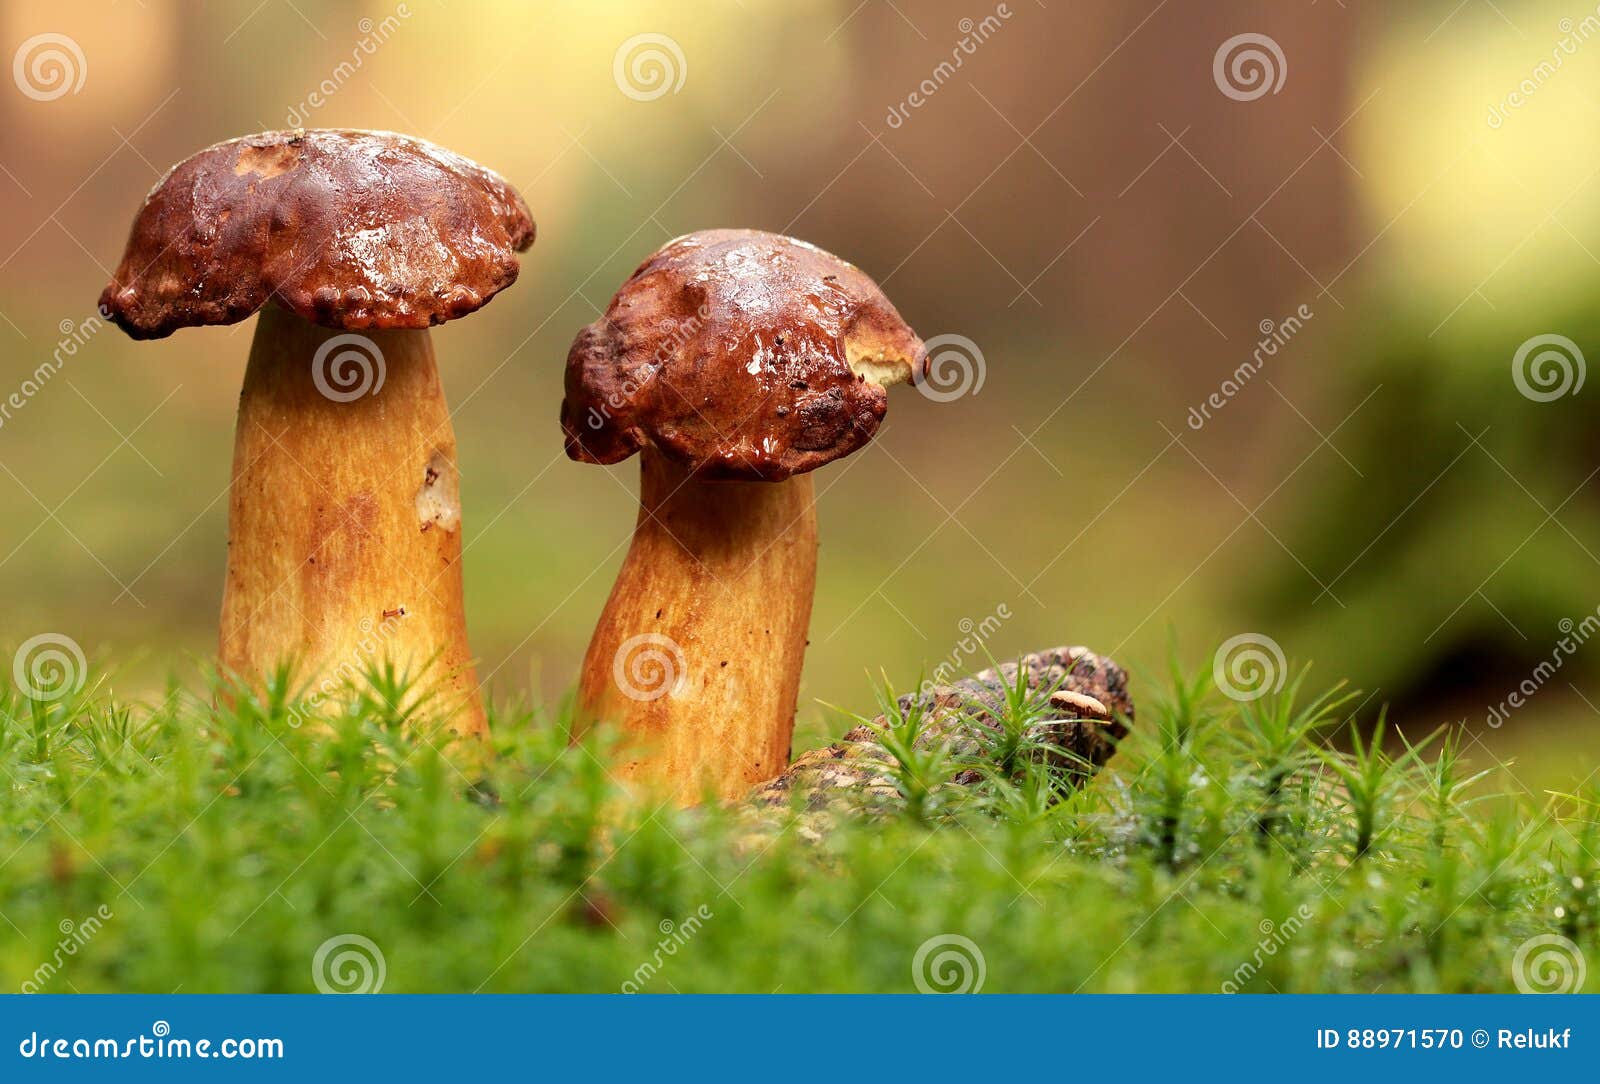 图片素材 : 森林, 餐饮, 生产, 椰子, 牛肝菌蘑菇, 可食用的蘑菇, shiitake, 药用蘑菇, 便士包 3665x2364 ...